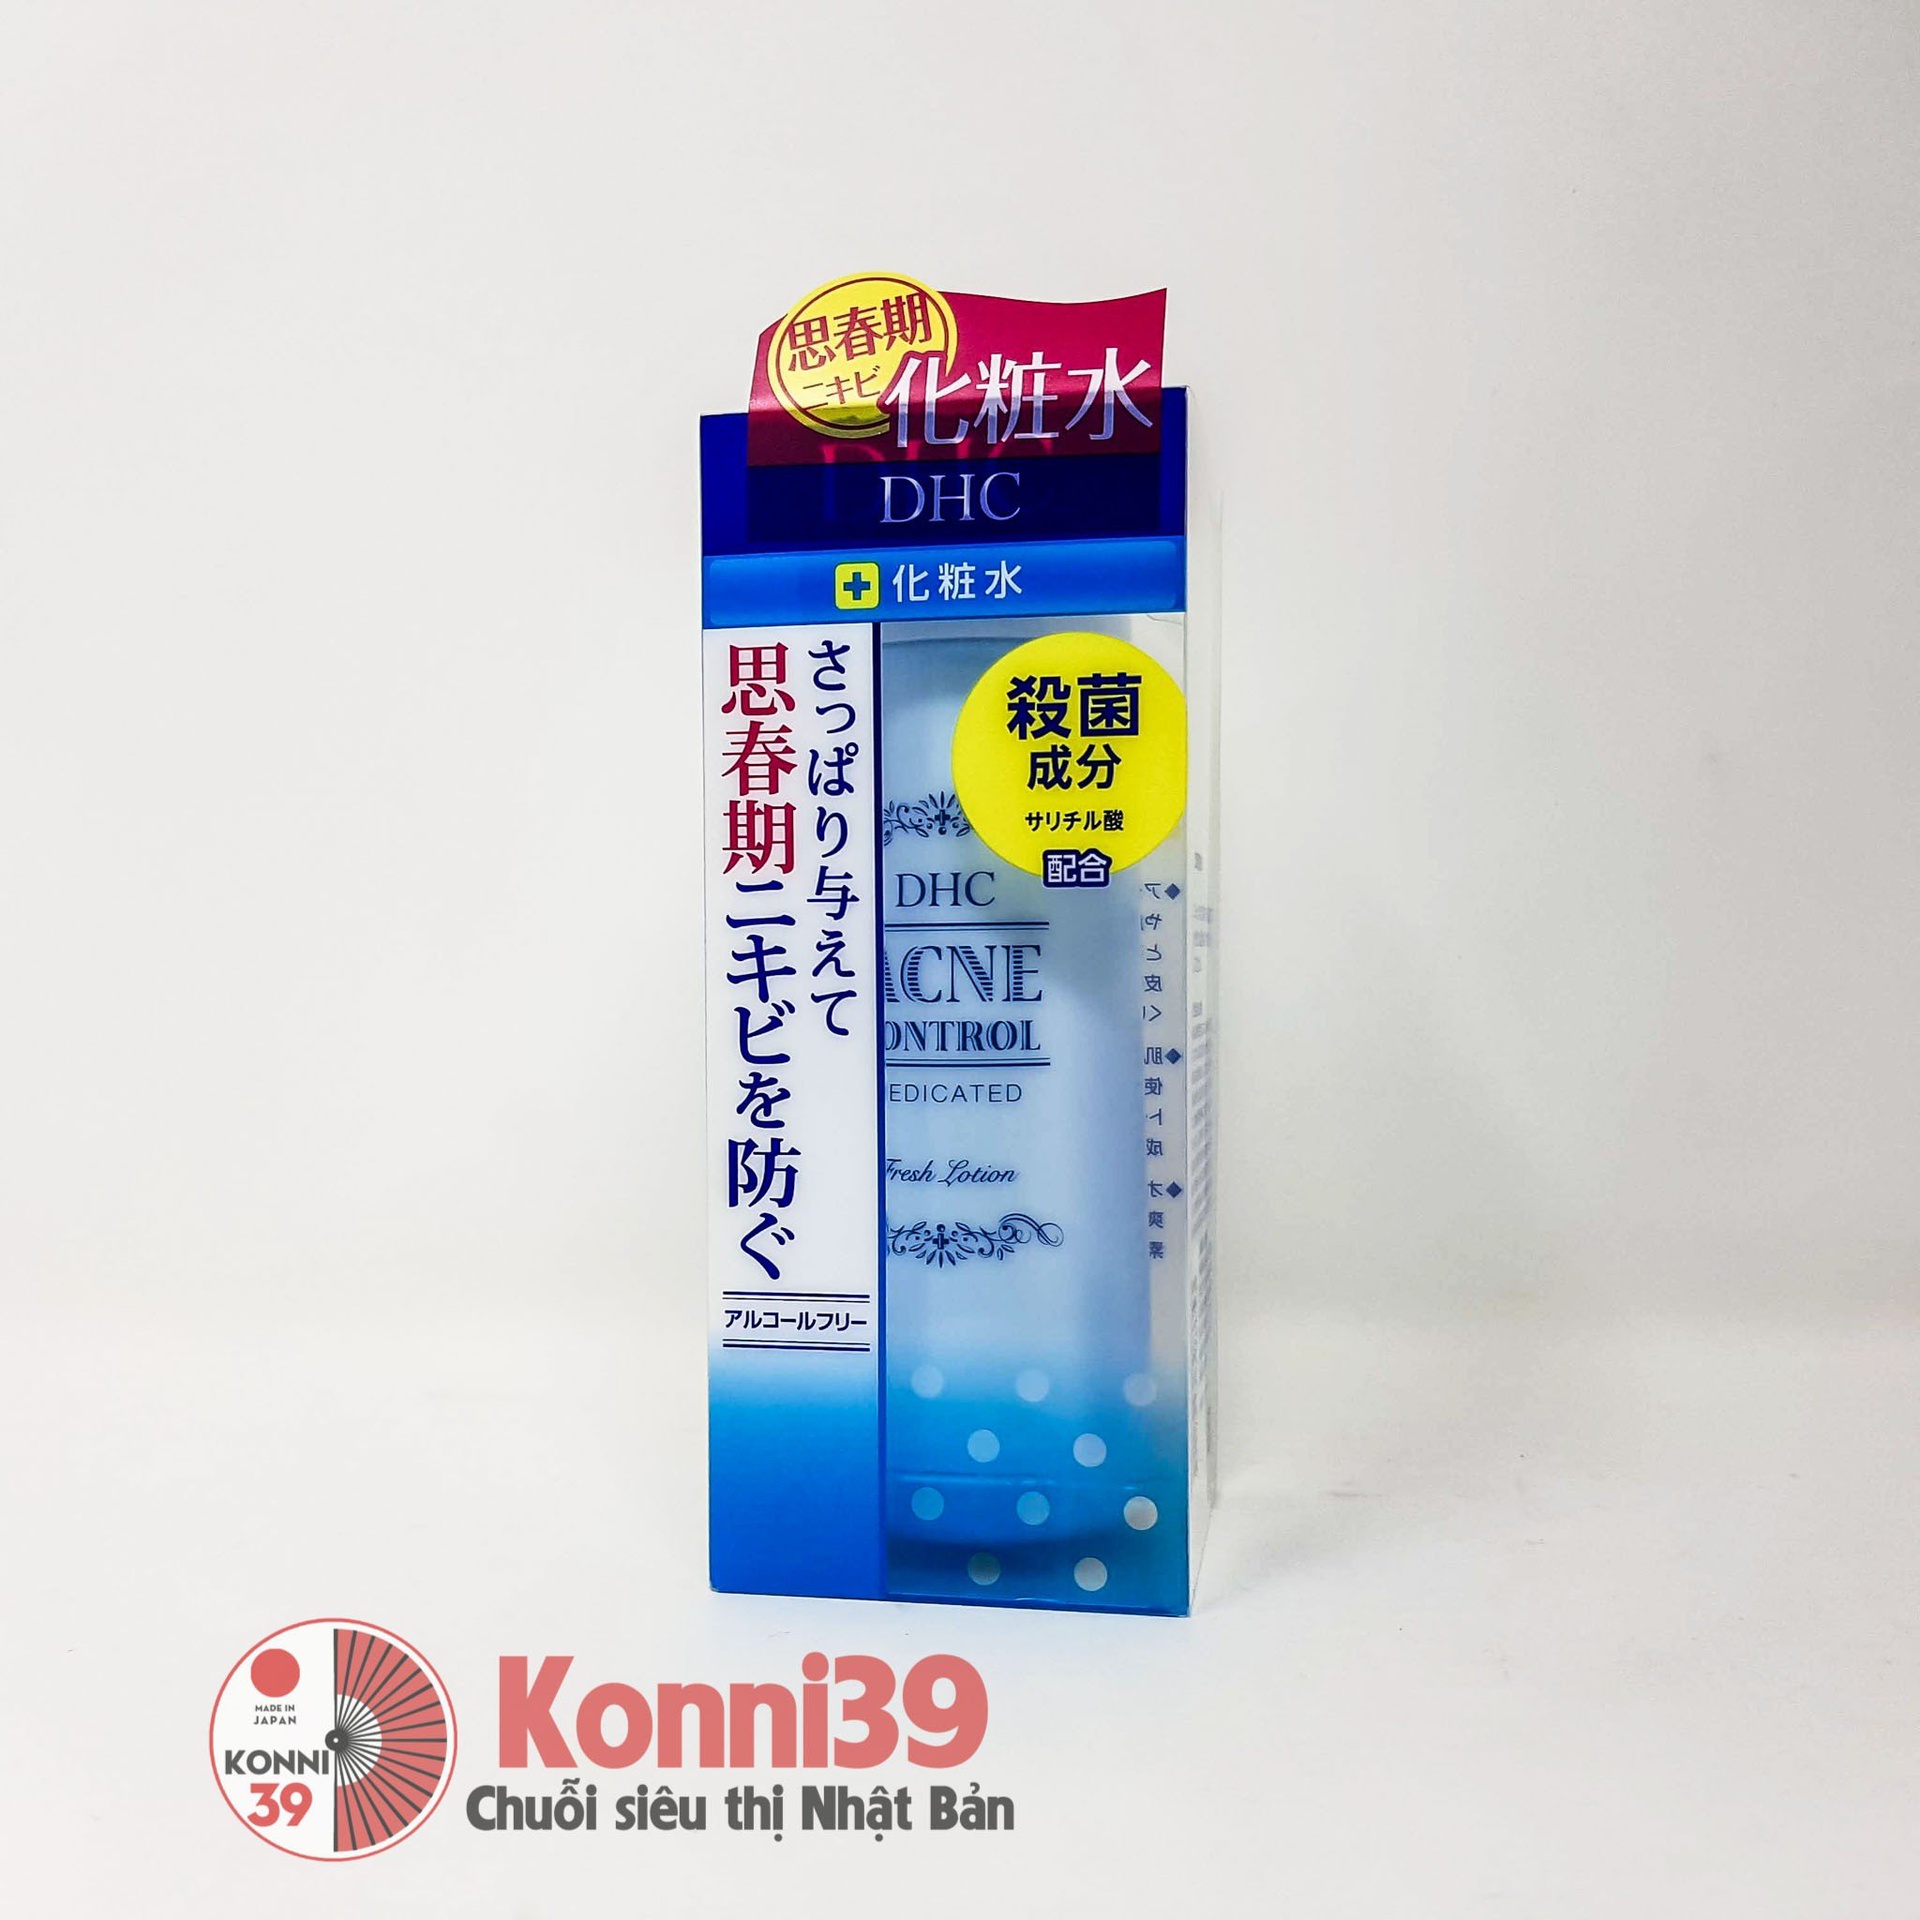 Nước hoa hồng DHC Acne Control Medicated trị mụn 160ml